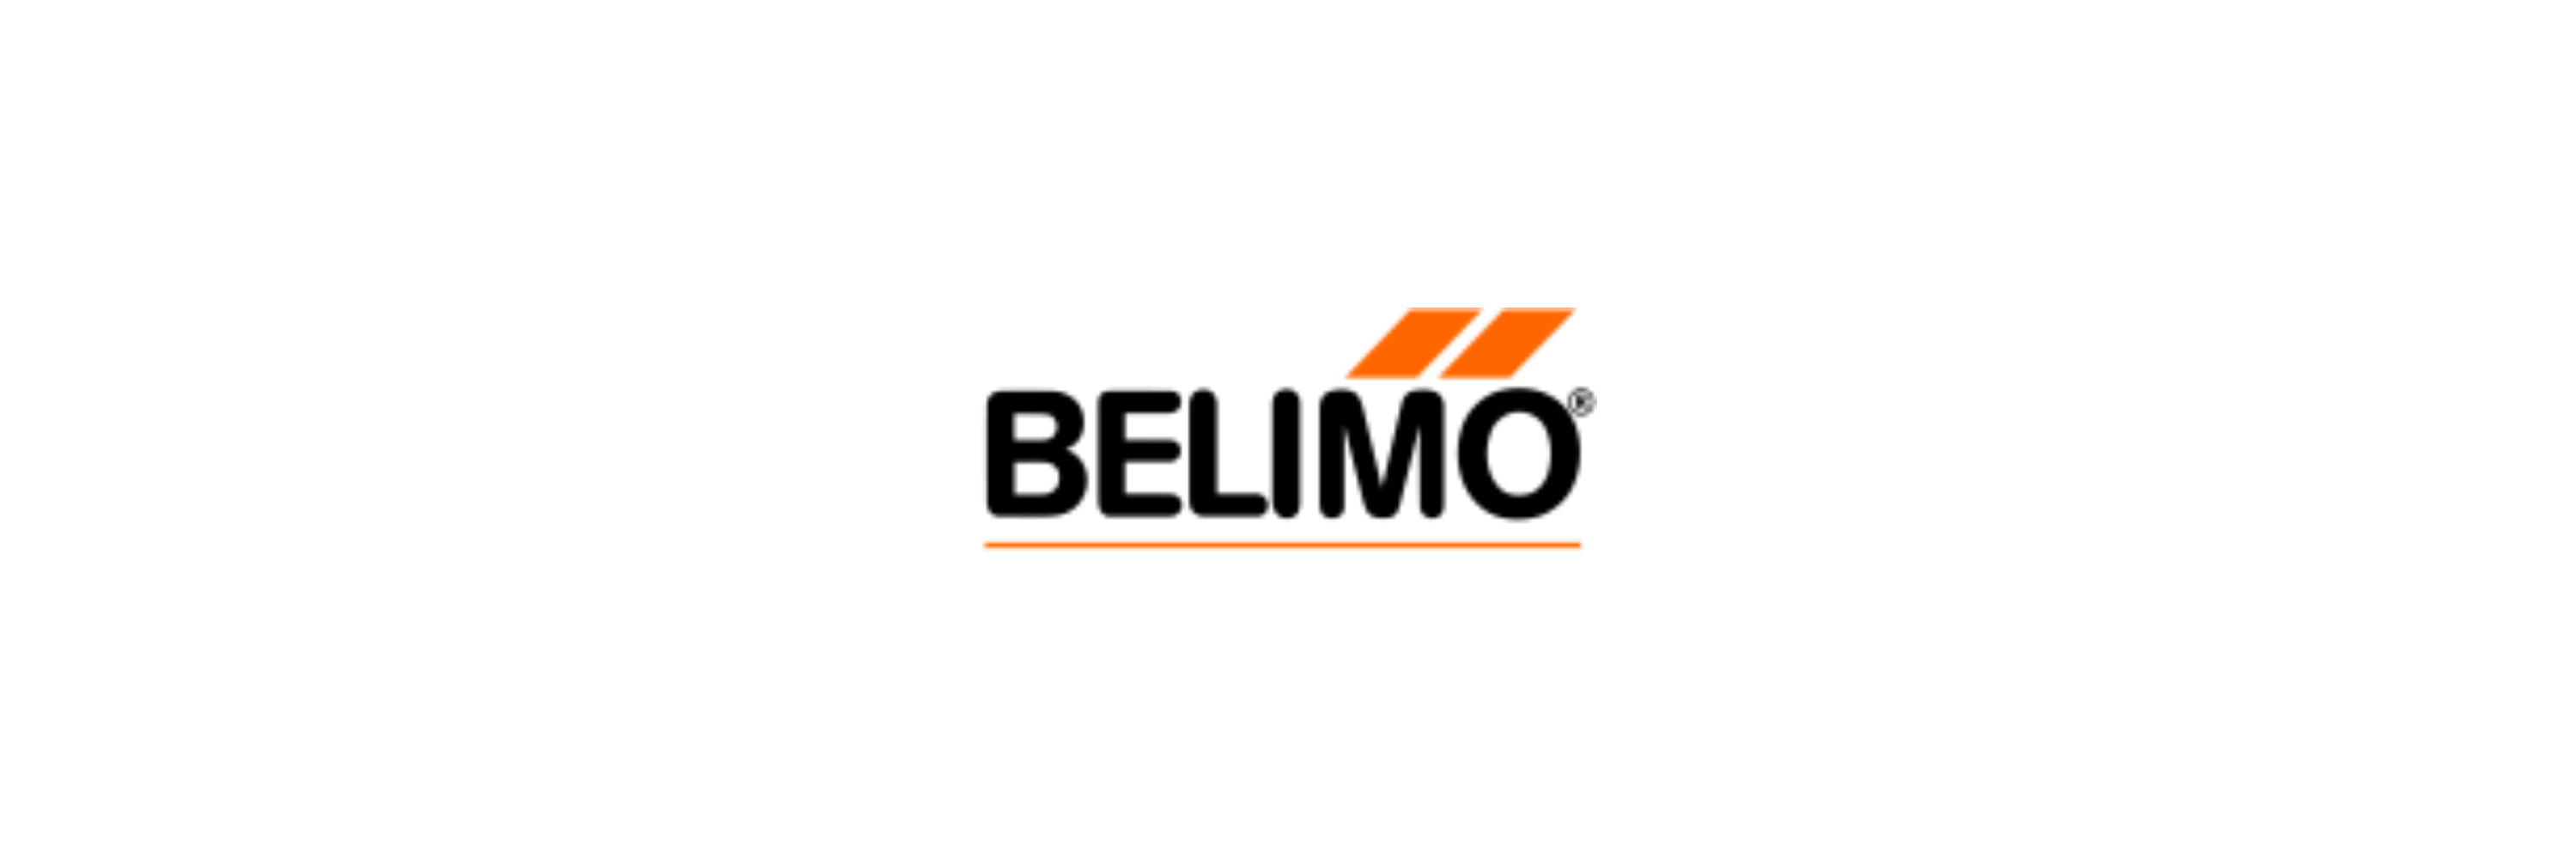 Belimo - Klenk Maschinenhandel